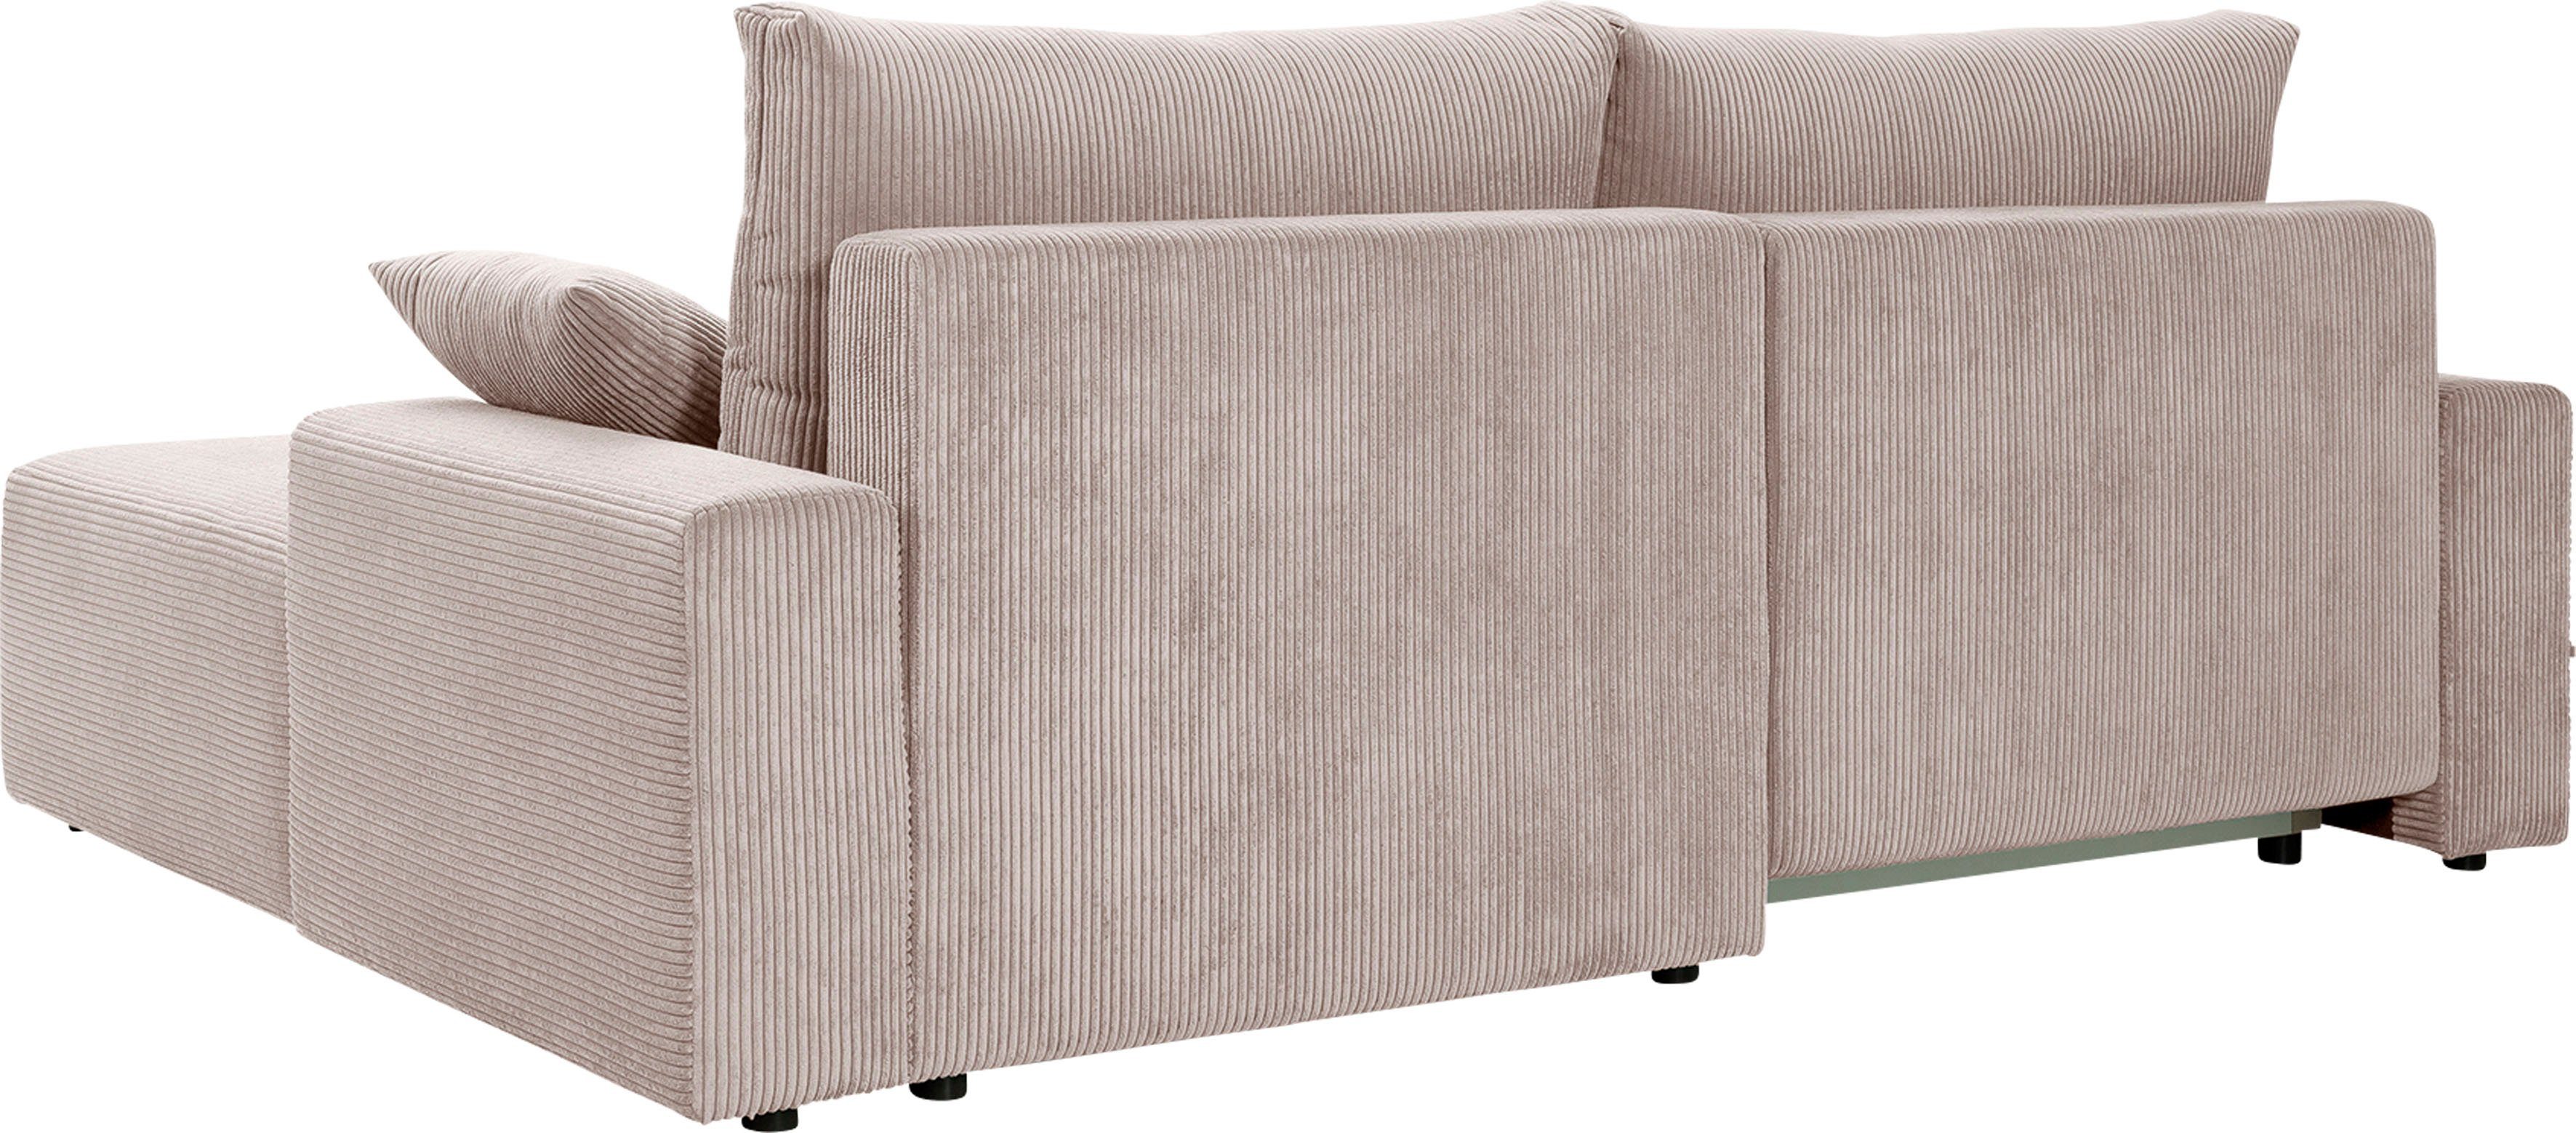 exxpo - sofa fashion Bettkasten Orinoko, biege Cord-Farben inklusive Bettfunktion Ecksofa verschiedenen in und